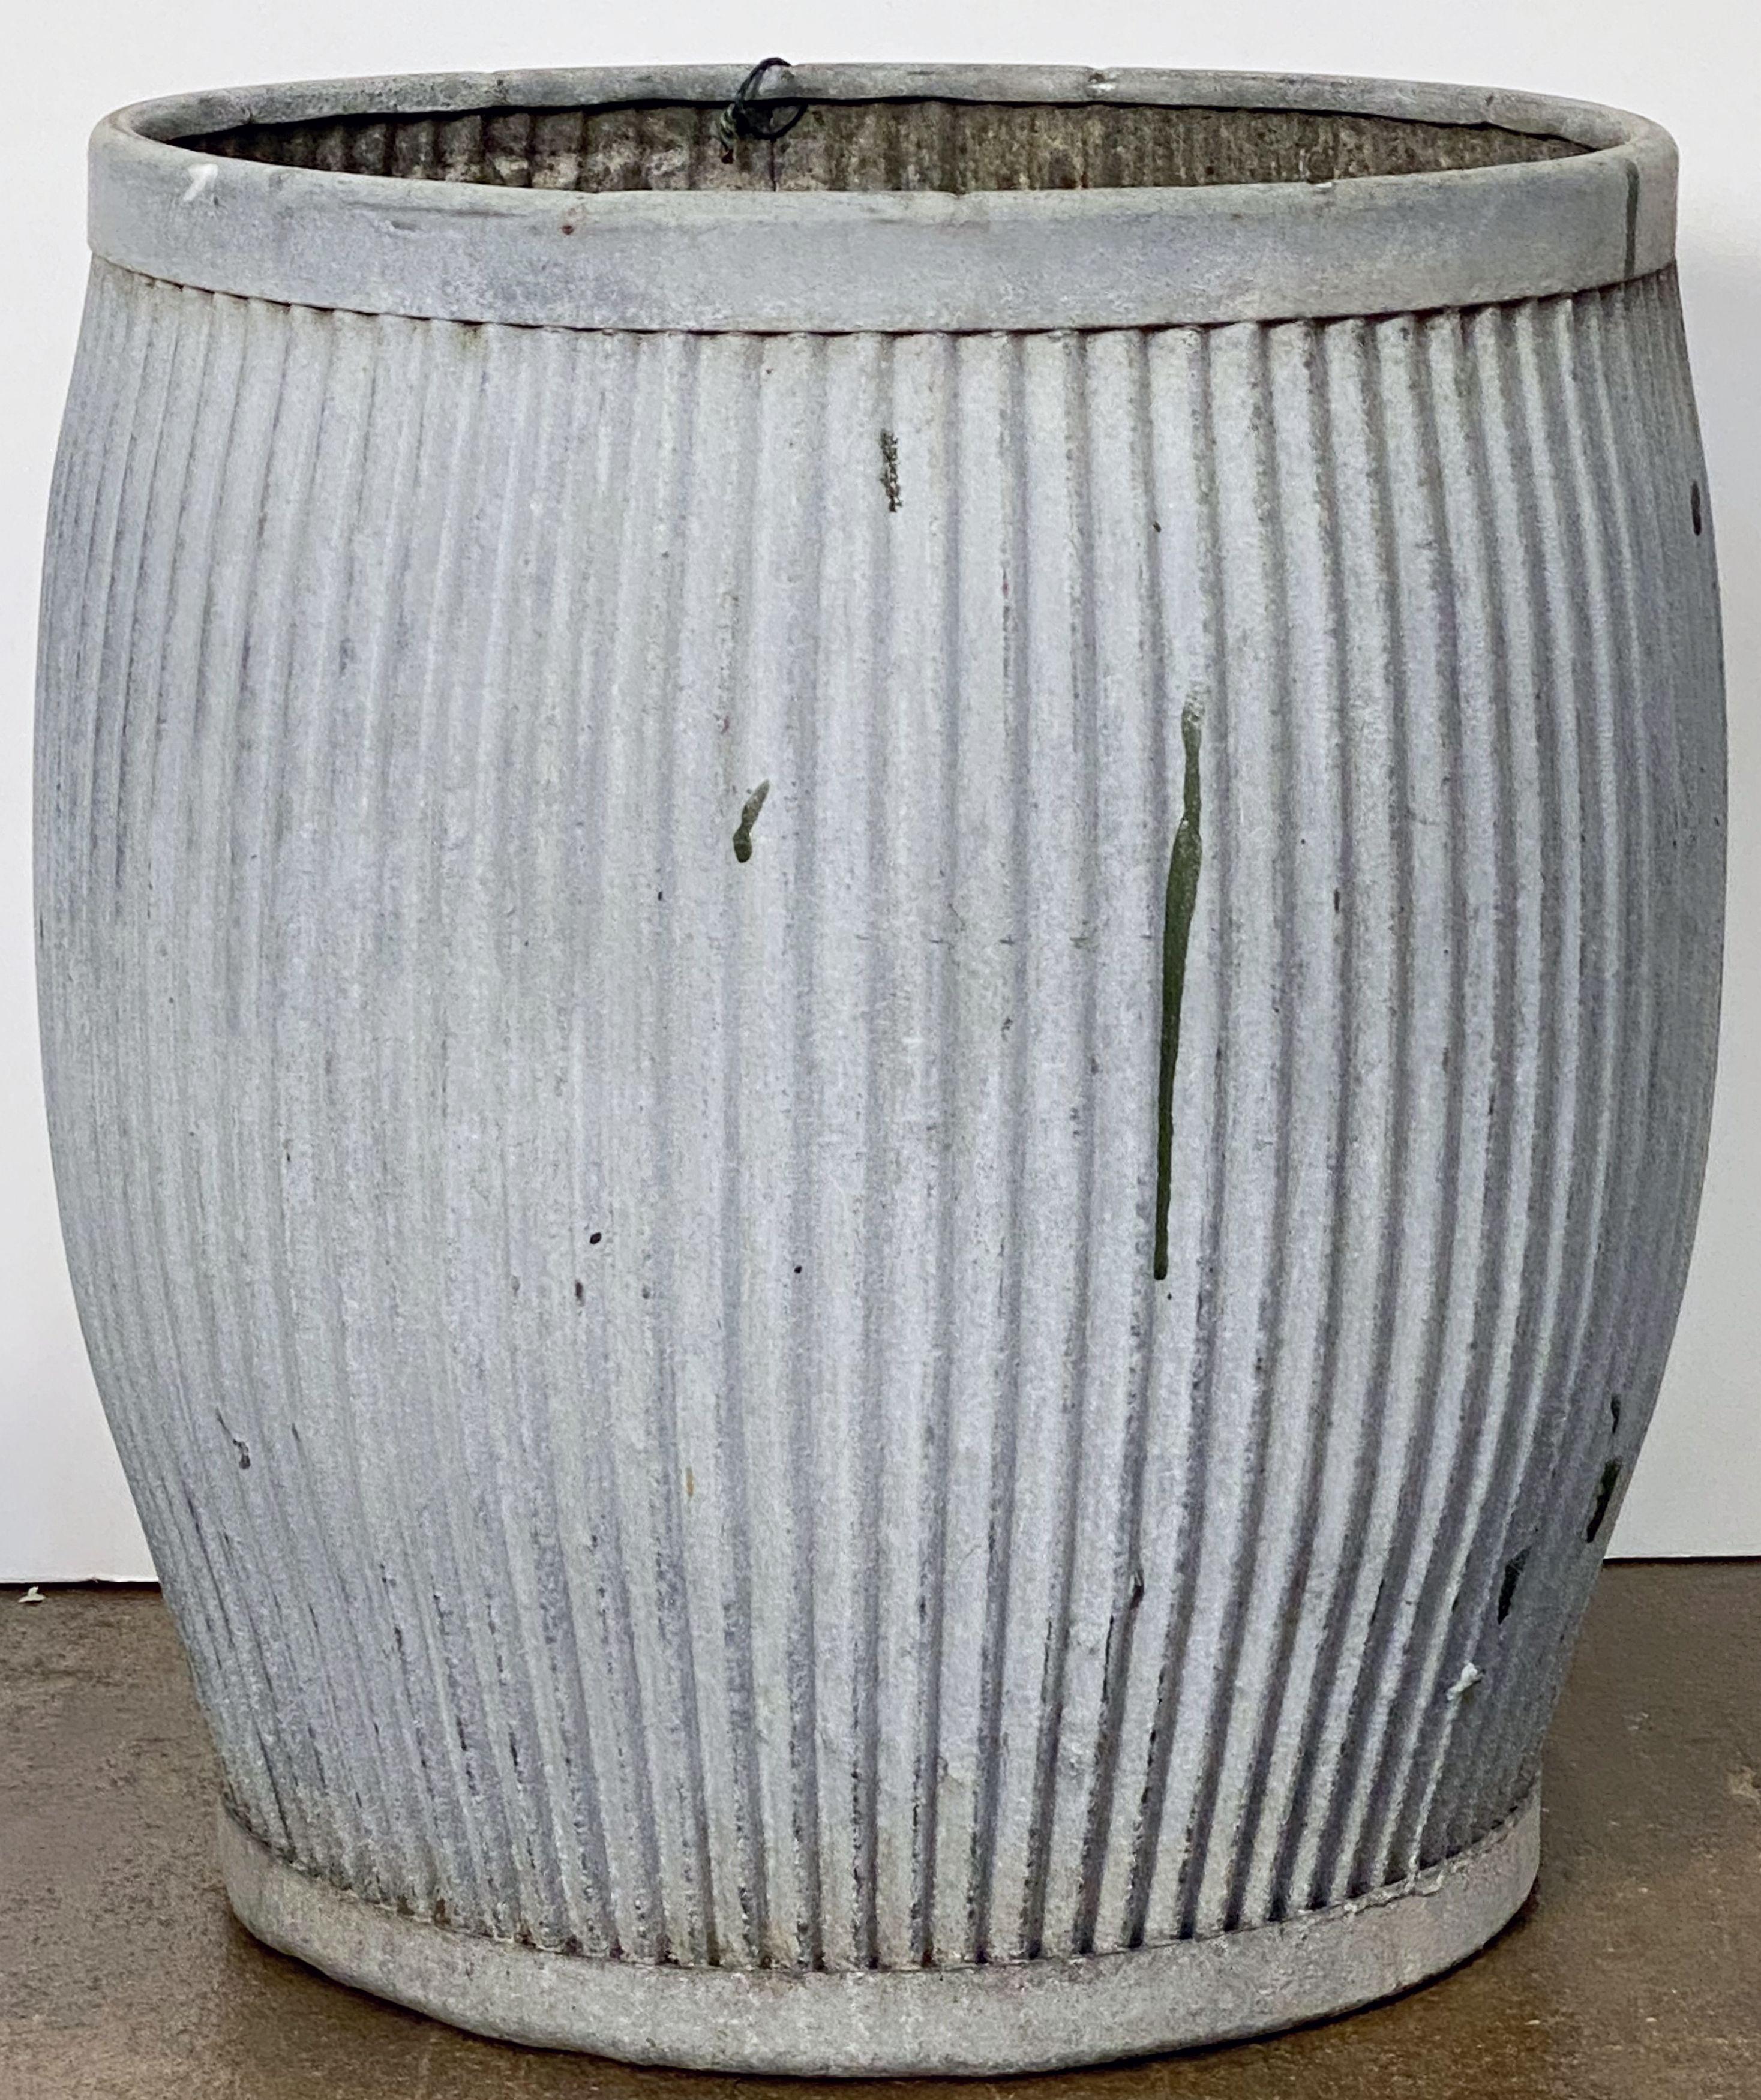 English Garden Pot or Dolly Tub Planter of Zinc 11